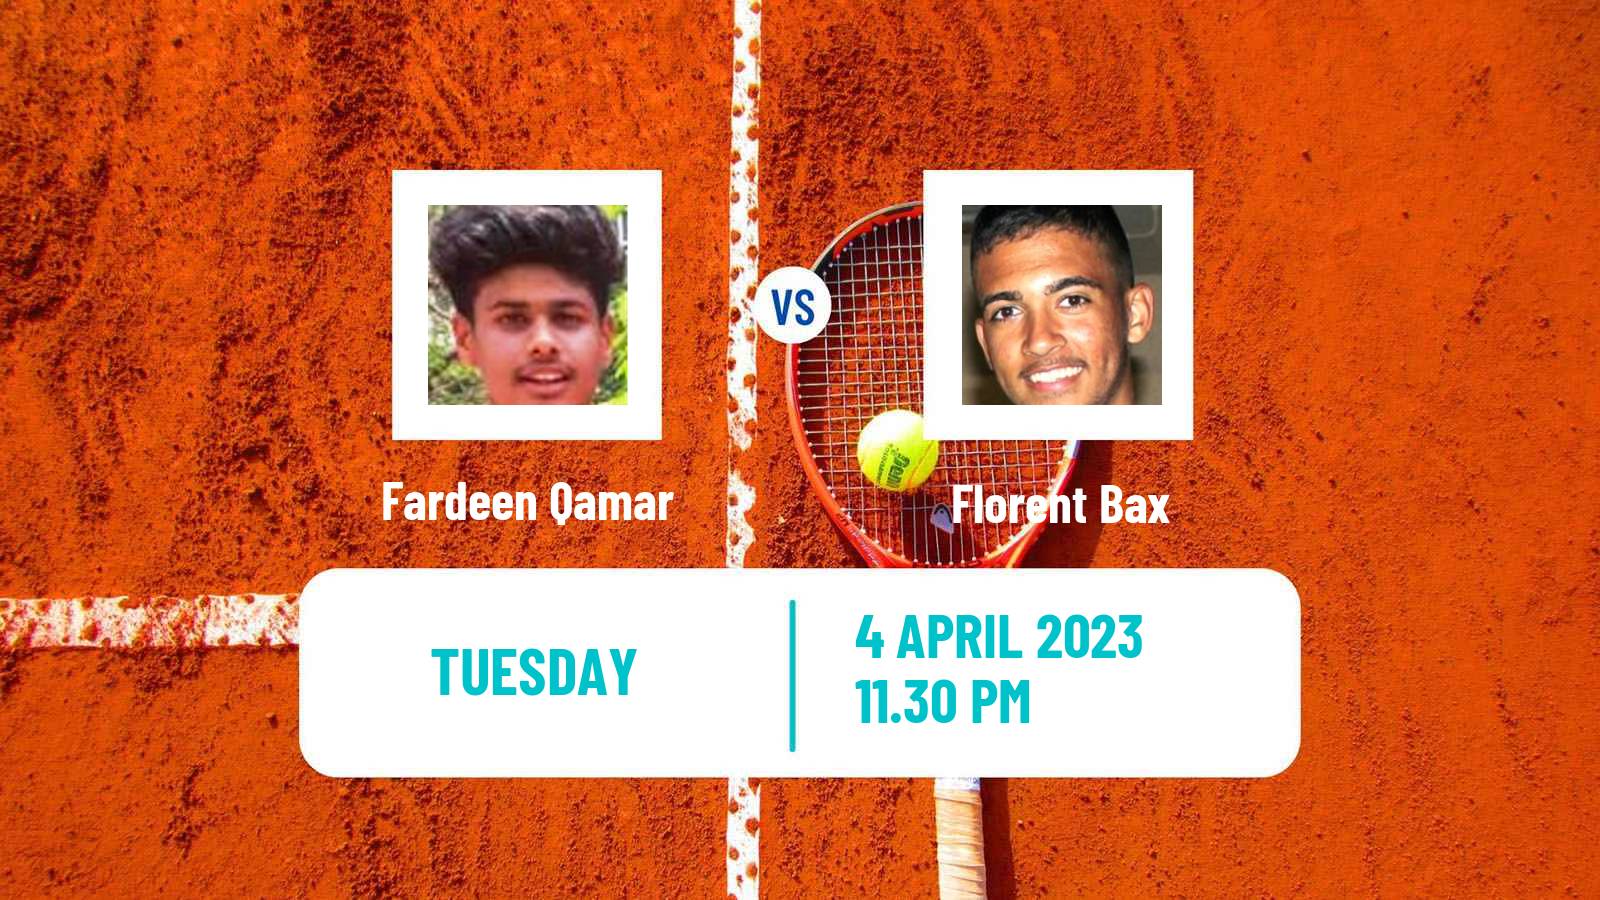 Tennis ITF Tournaments Fardeen Qamar - Florent Bax